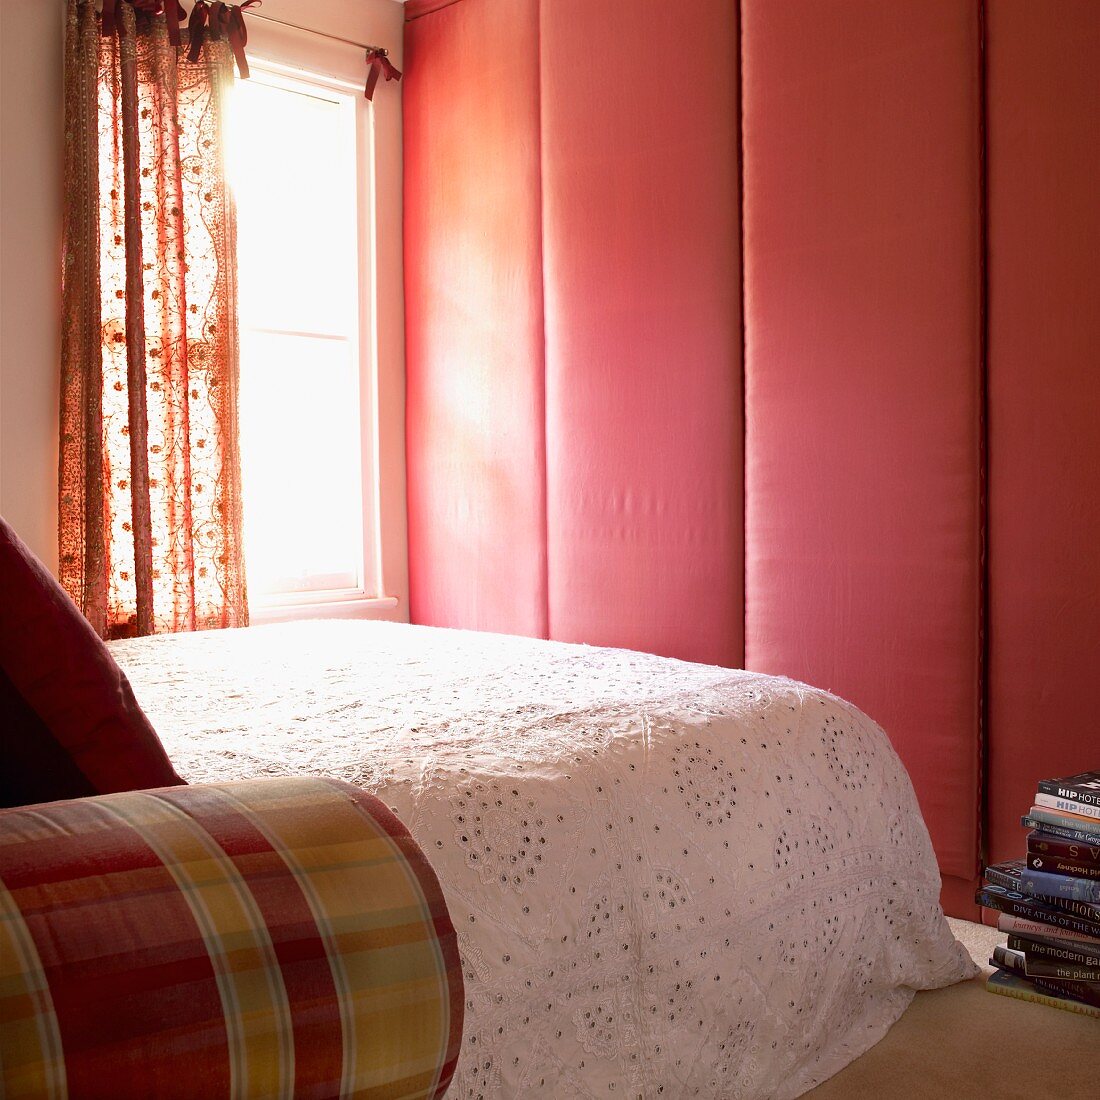 Schlafzimmer mit stoffbezogenem Schrank, Doppelbett mit Tagesdecke und Fenster mit gemusterten Vorhängen